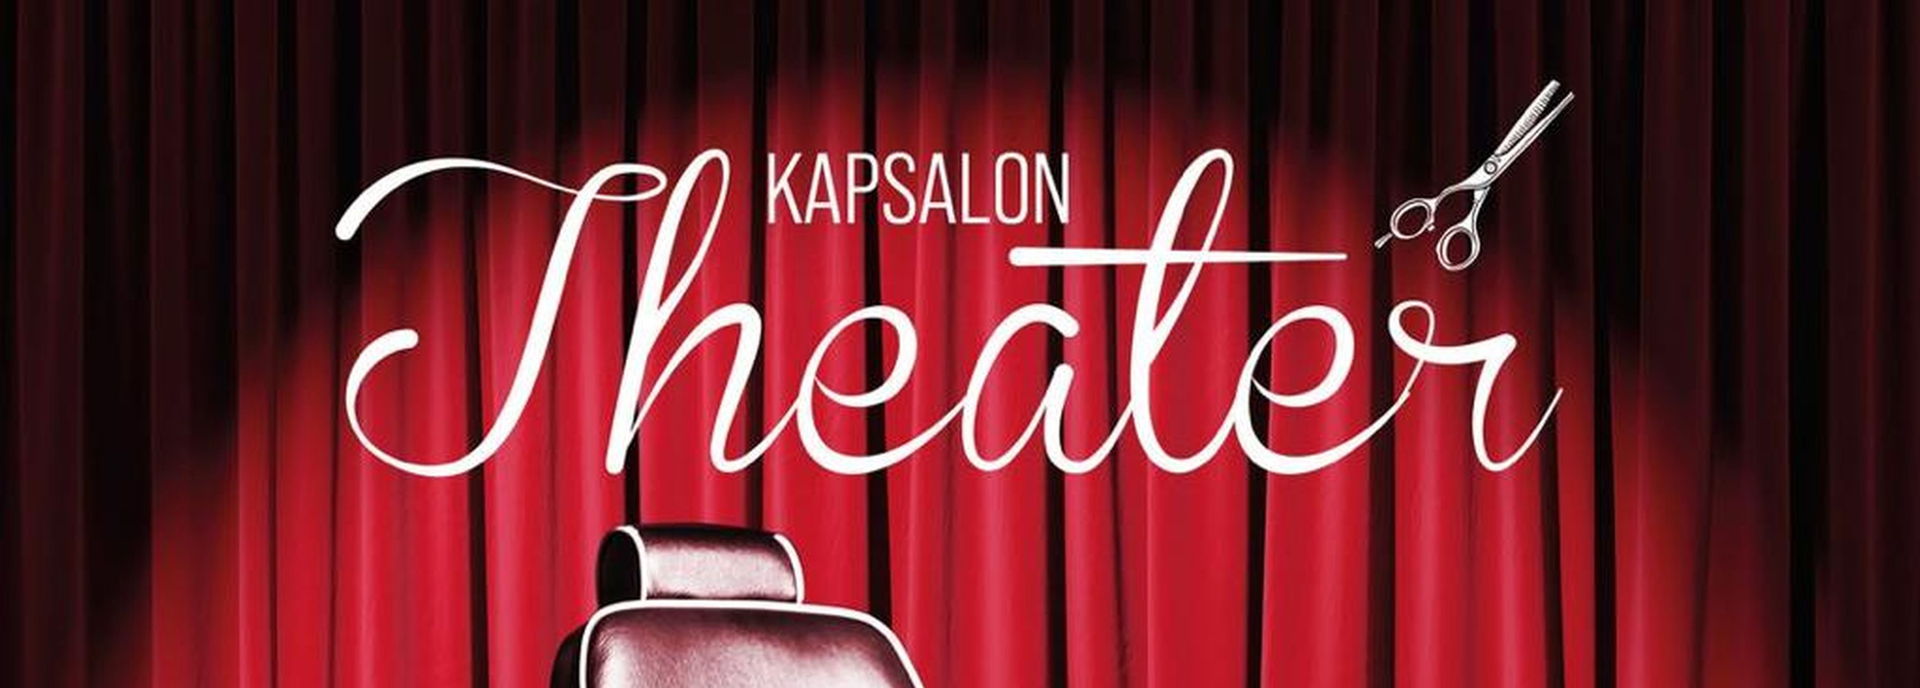 Kapsalon Theater 2022